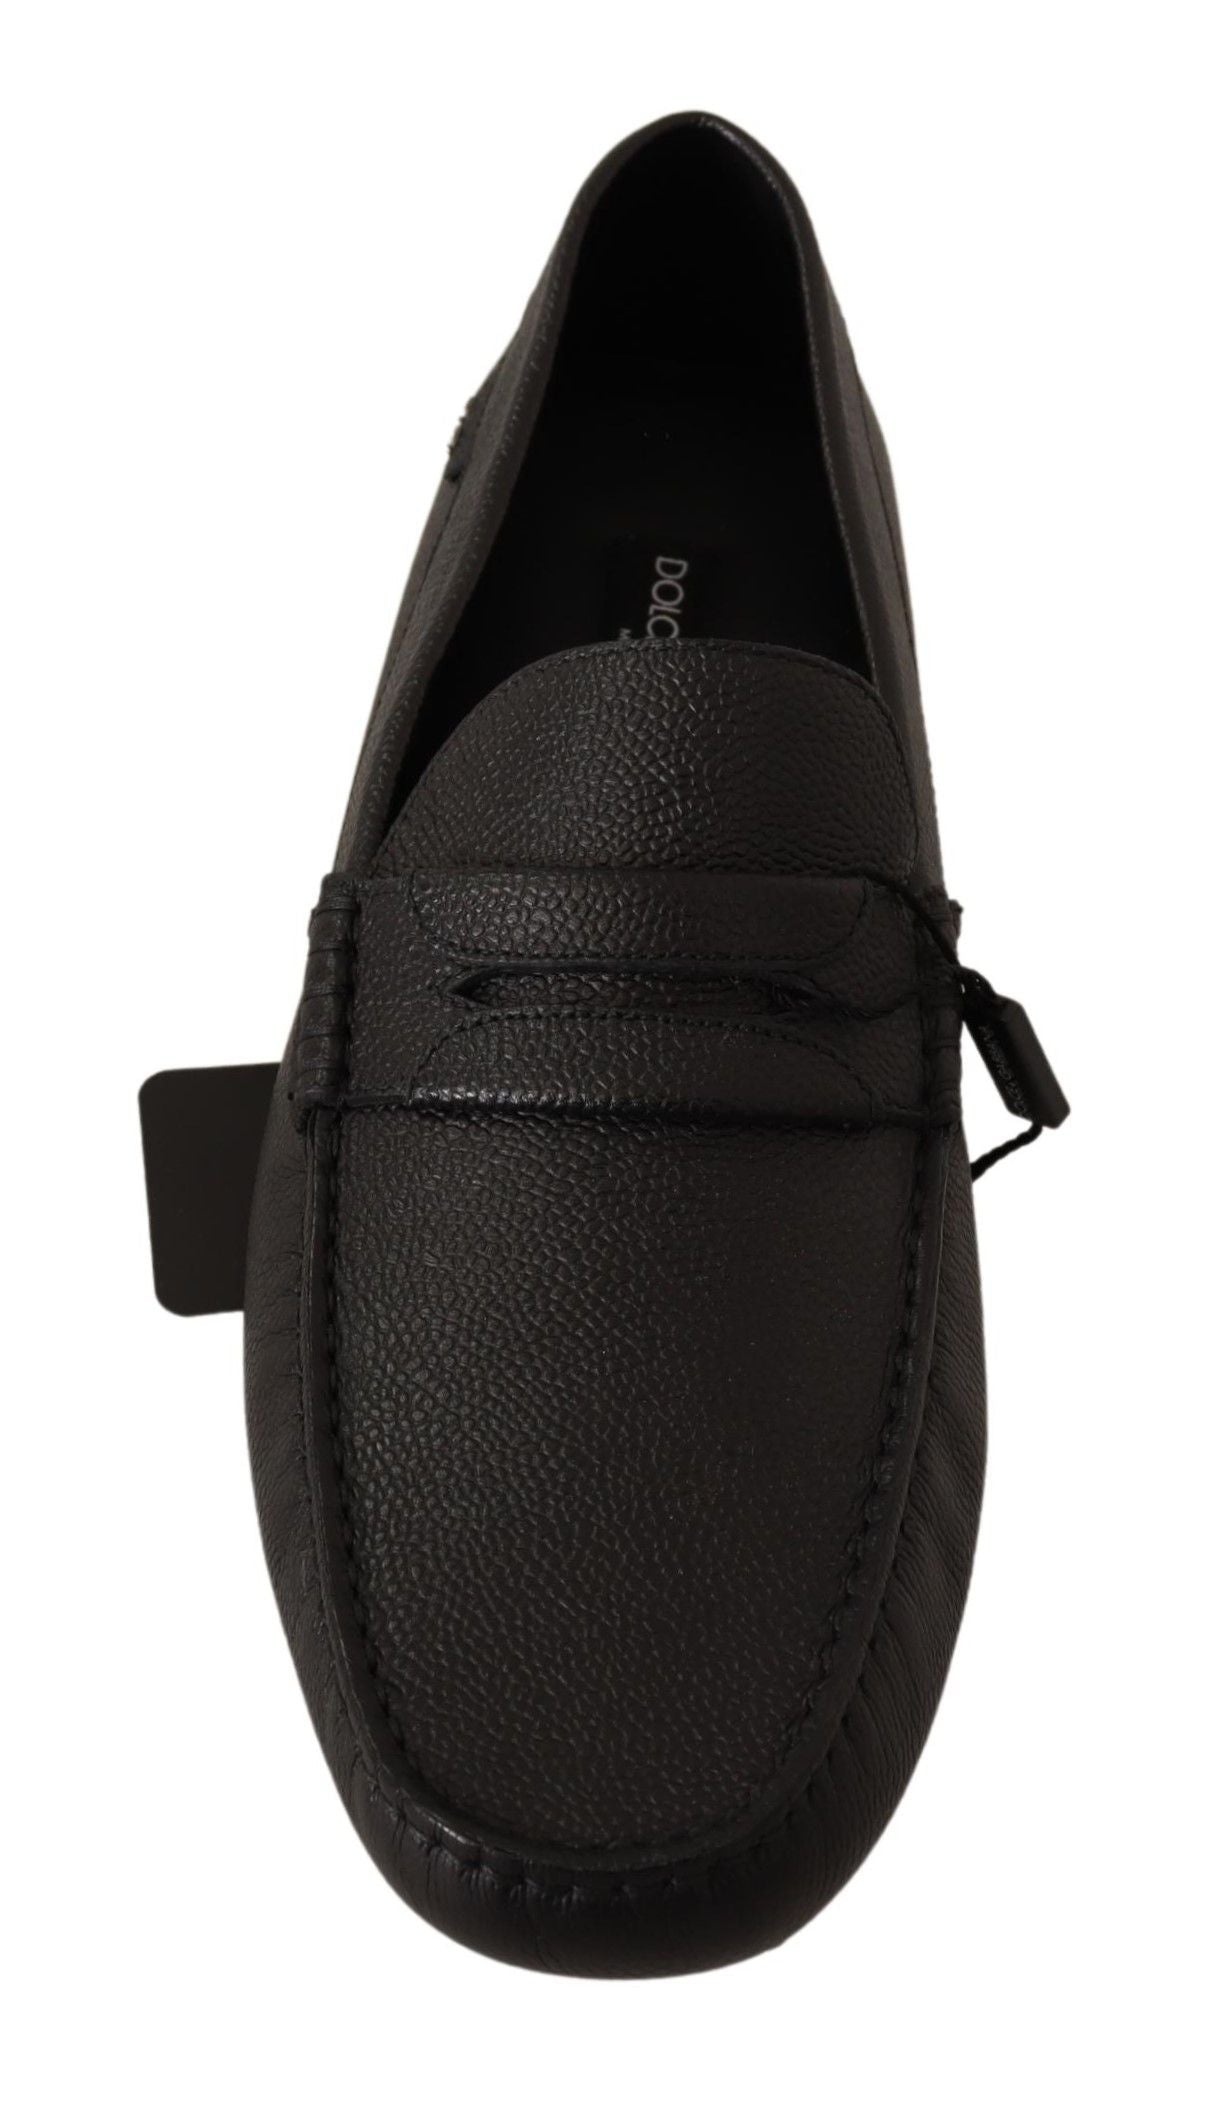 Elegant Black Leather Loafers for Modern Men